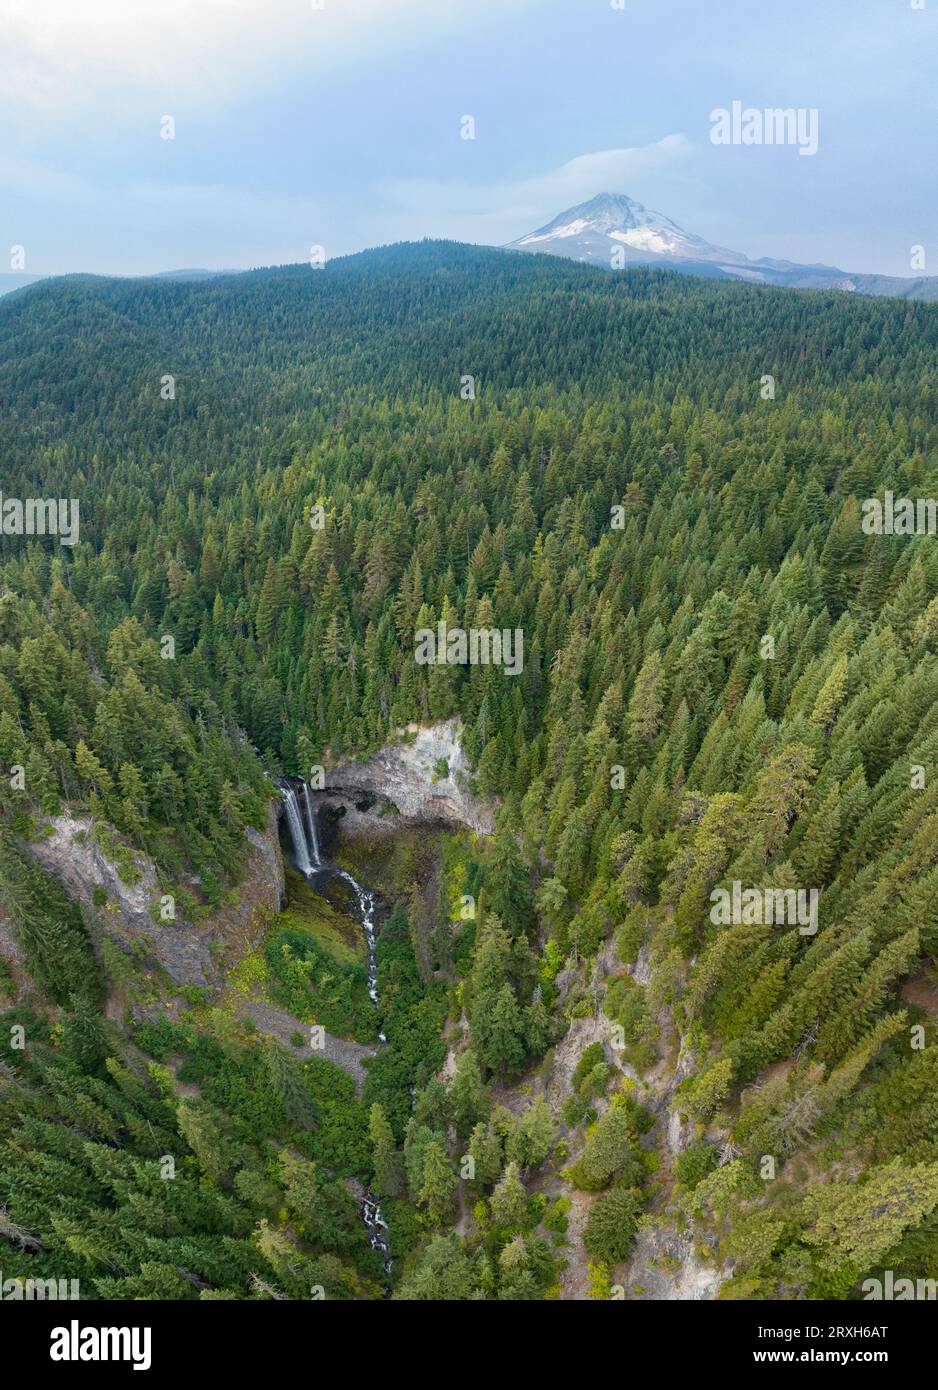 Si trova sul versante orientale del Monte Hood, non lontano da Portland, Oregon, le imponenti cascate Tamawanas cadono per oltre 150 metri in una splendida foresta. Foto Stock